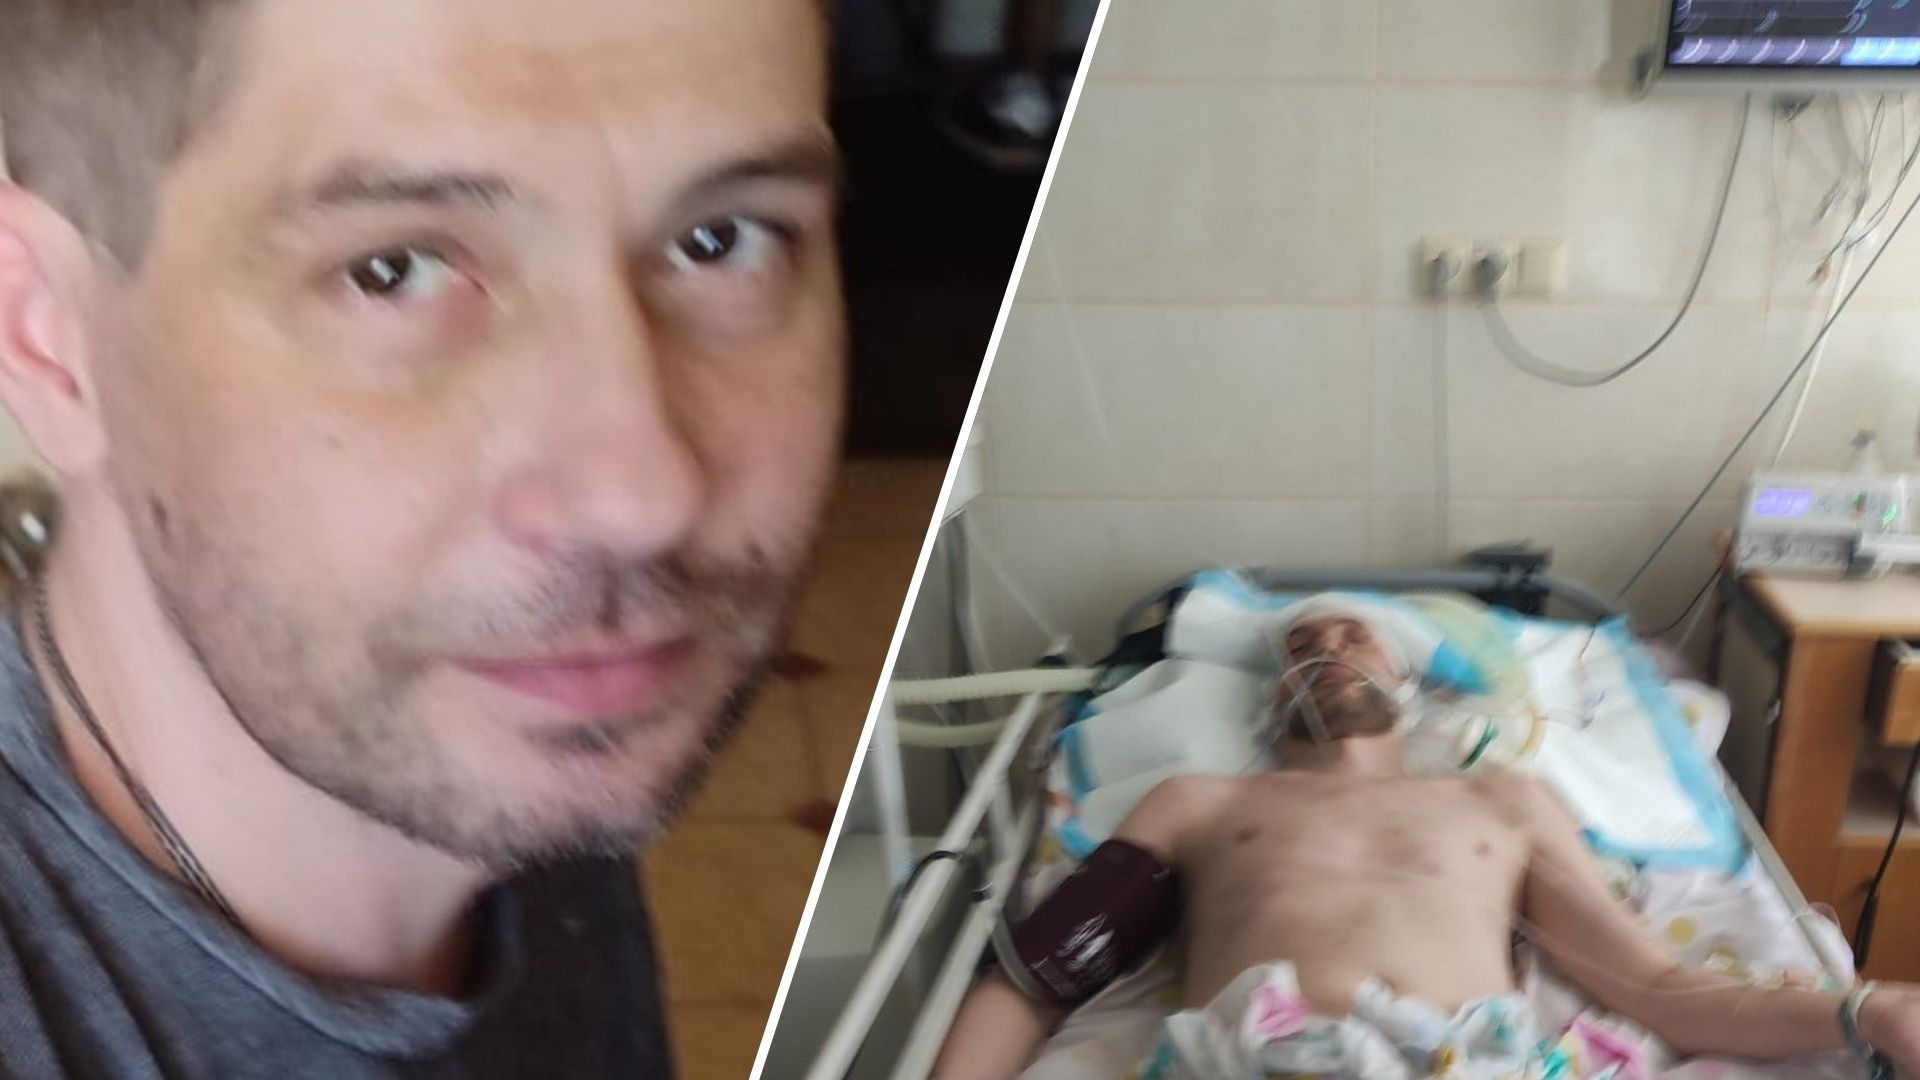 Андрій Панасюк, 41-річний житель Хмельницького, пішов з життя через два дні після візиту до Хмельницького об’єднаного міського ТЦК та СП.